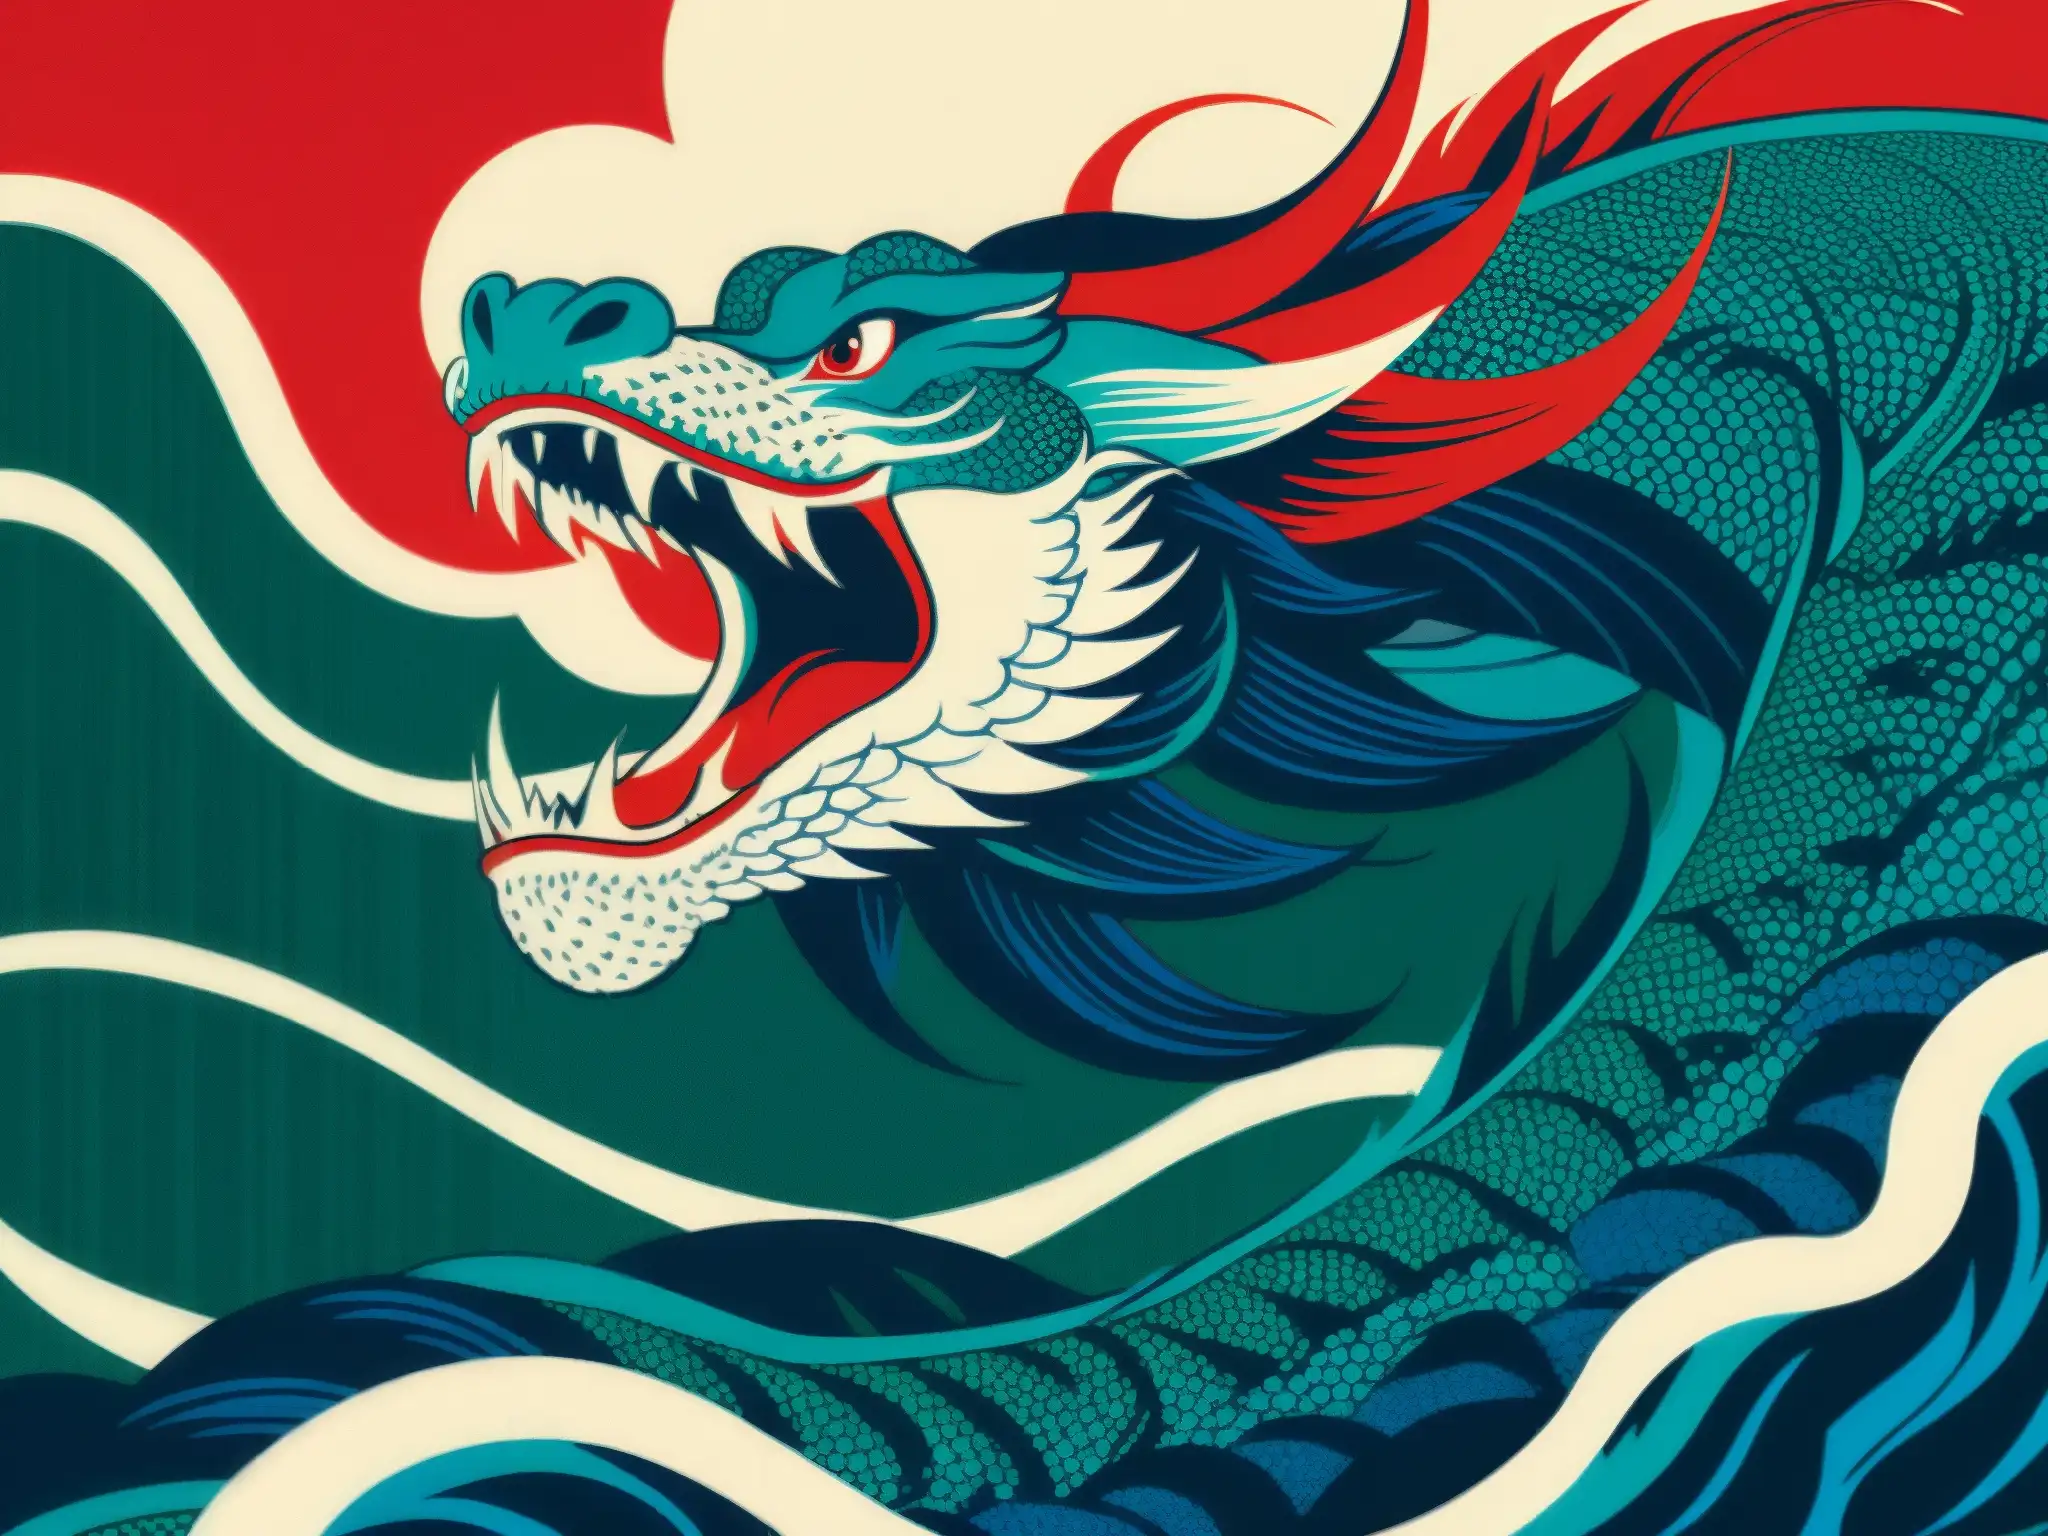 Una impresionante impresión japonesa de un dragón y una sirena, con detalles intrincados y colores vibrantes